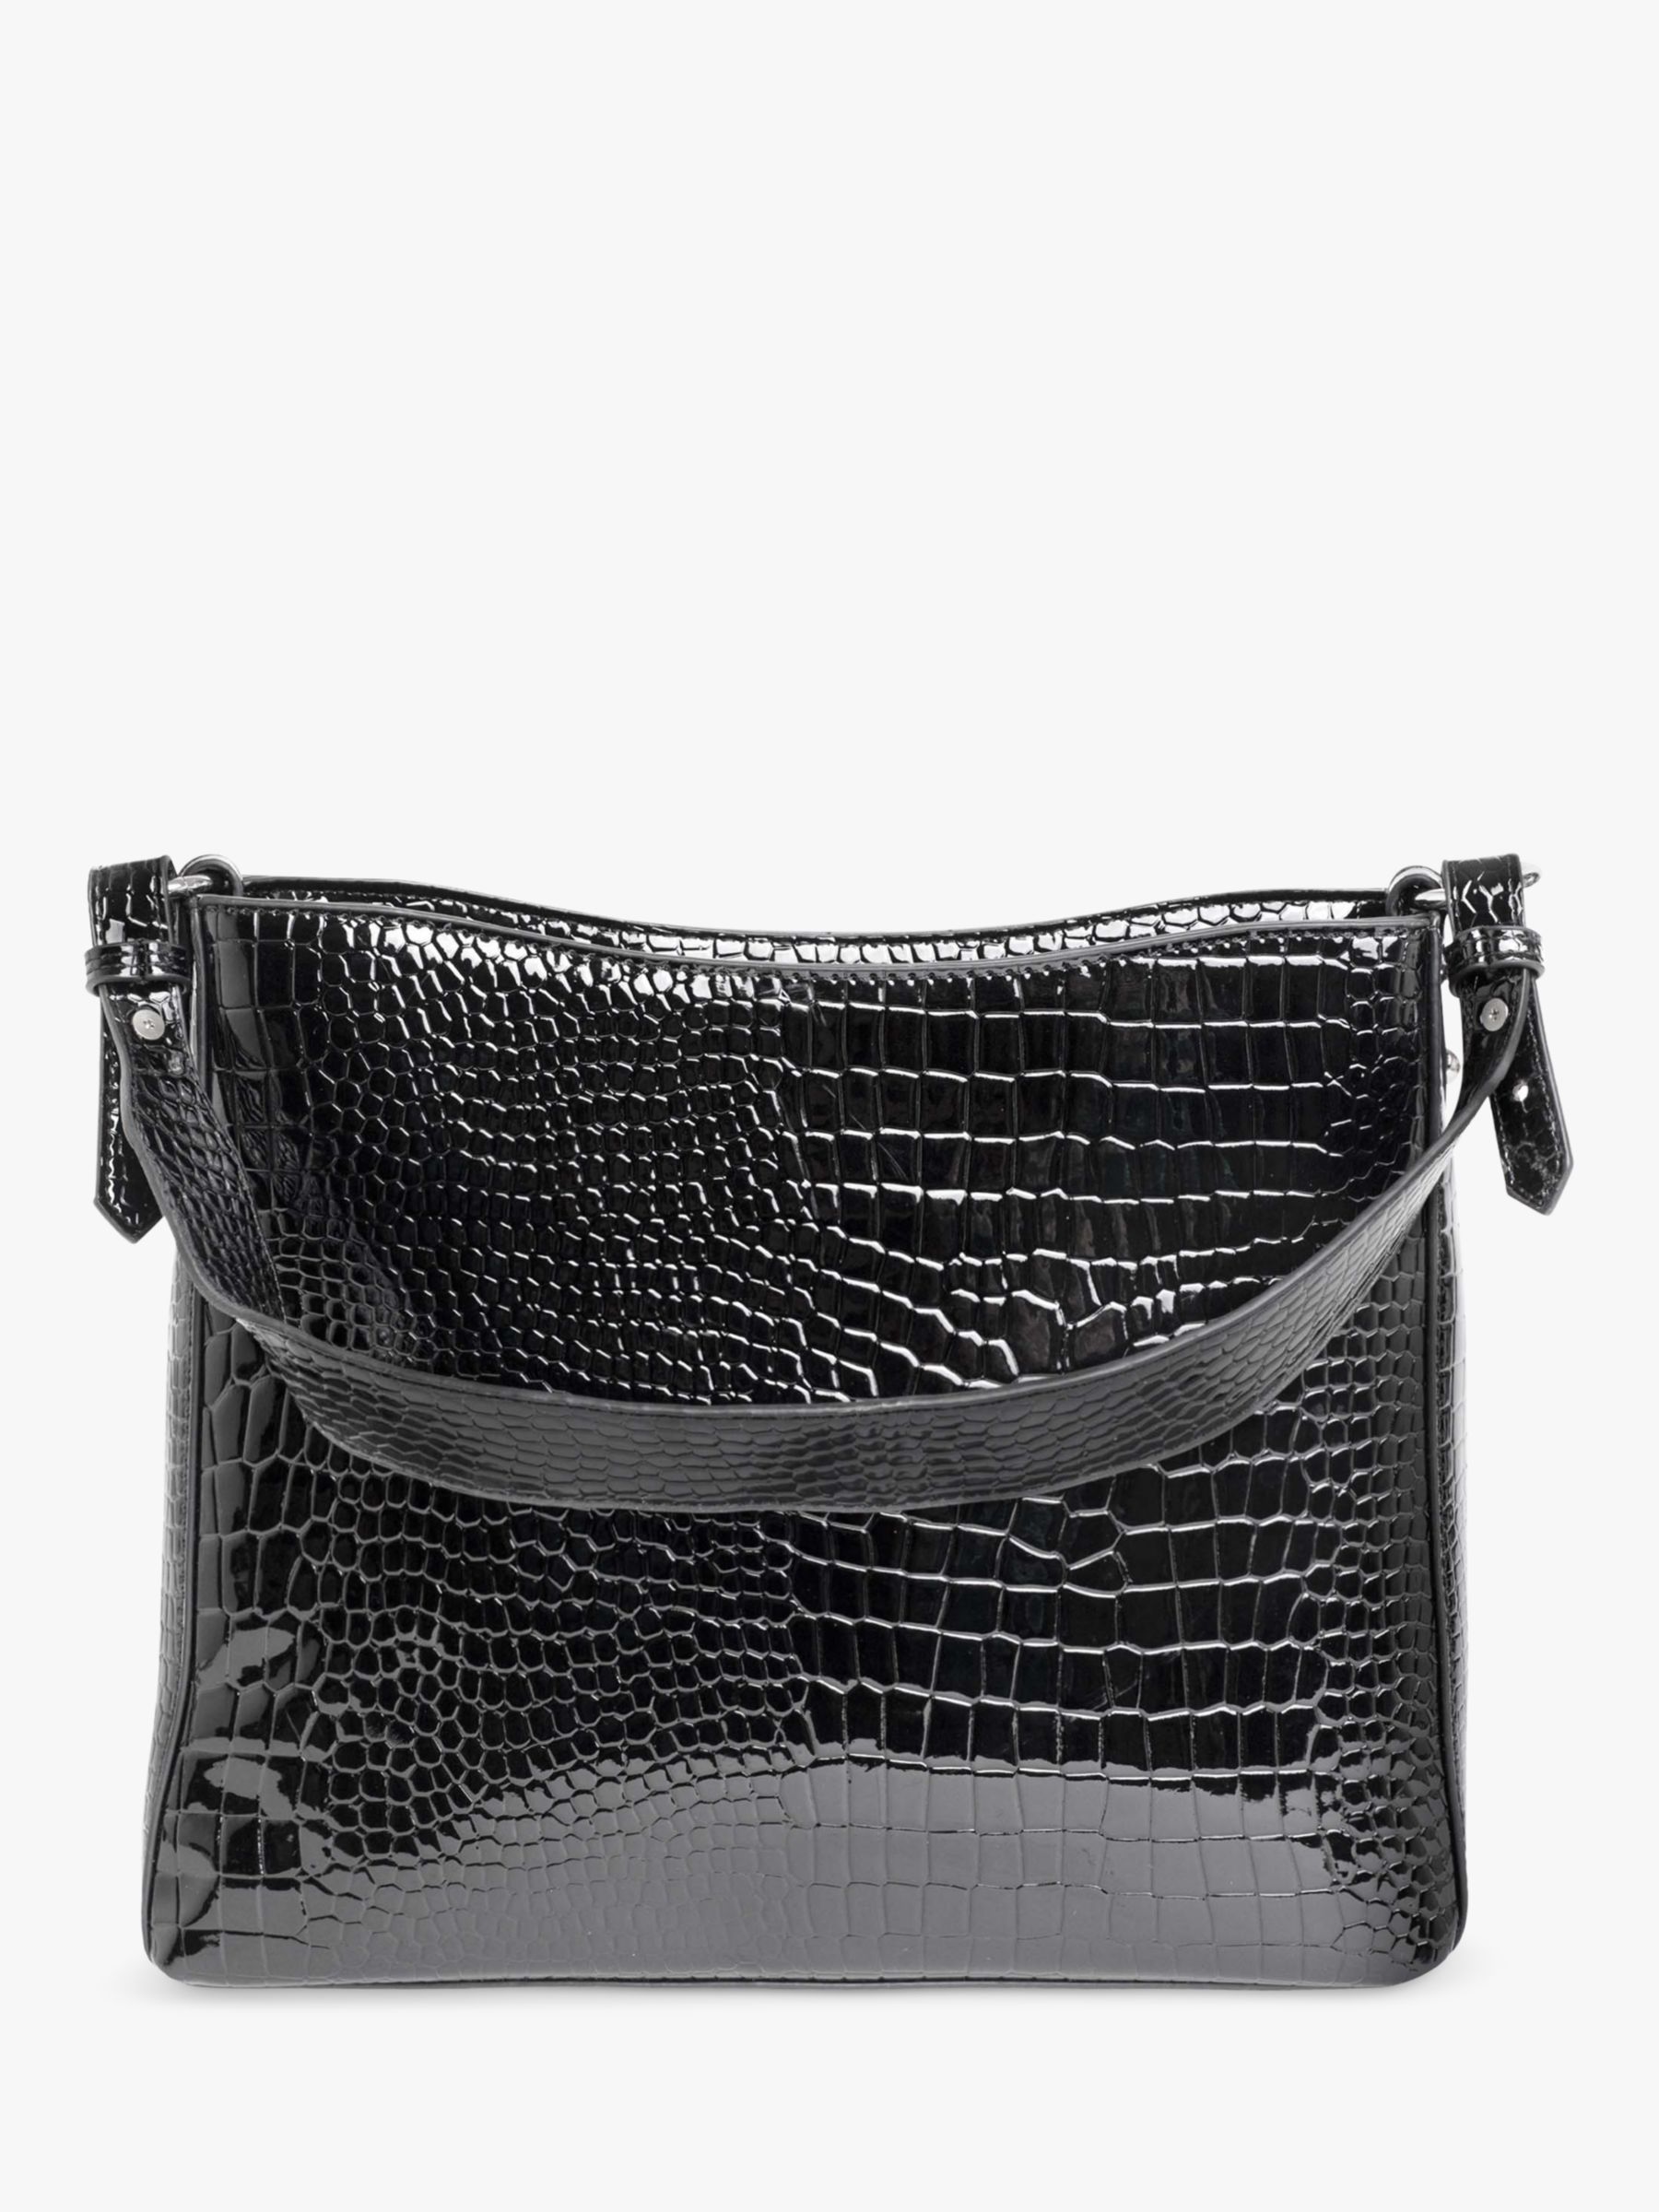 HVISK Amble Trace Shiny Croc Shoulder Bag, Black